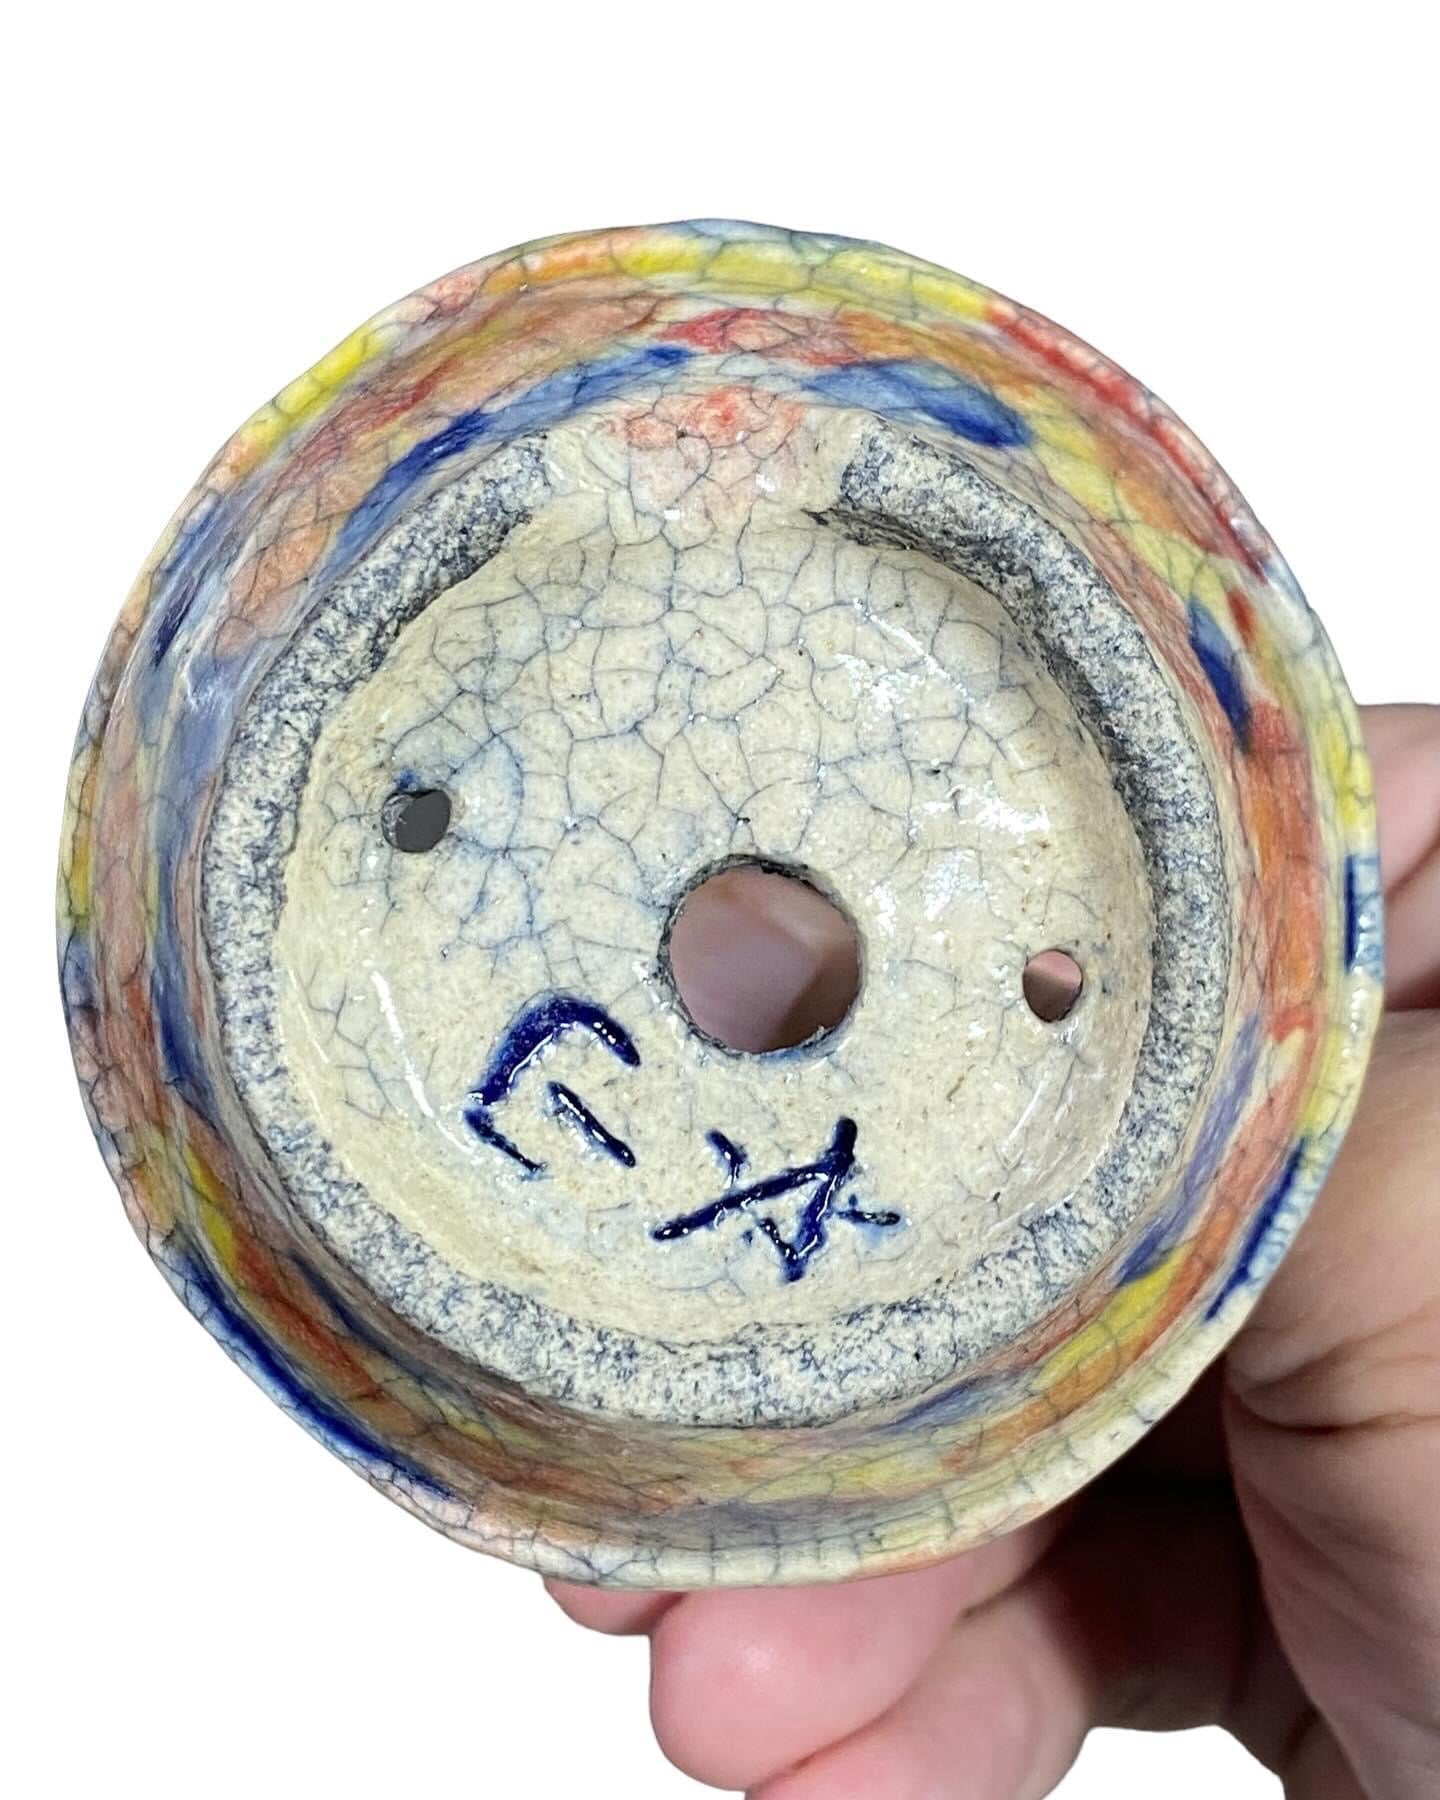 Bunzan - Multicolored Crackle Glaze Flower Basket Bonsai or Accent Pot (3-1/16” wide)